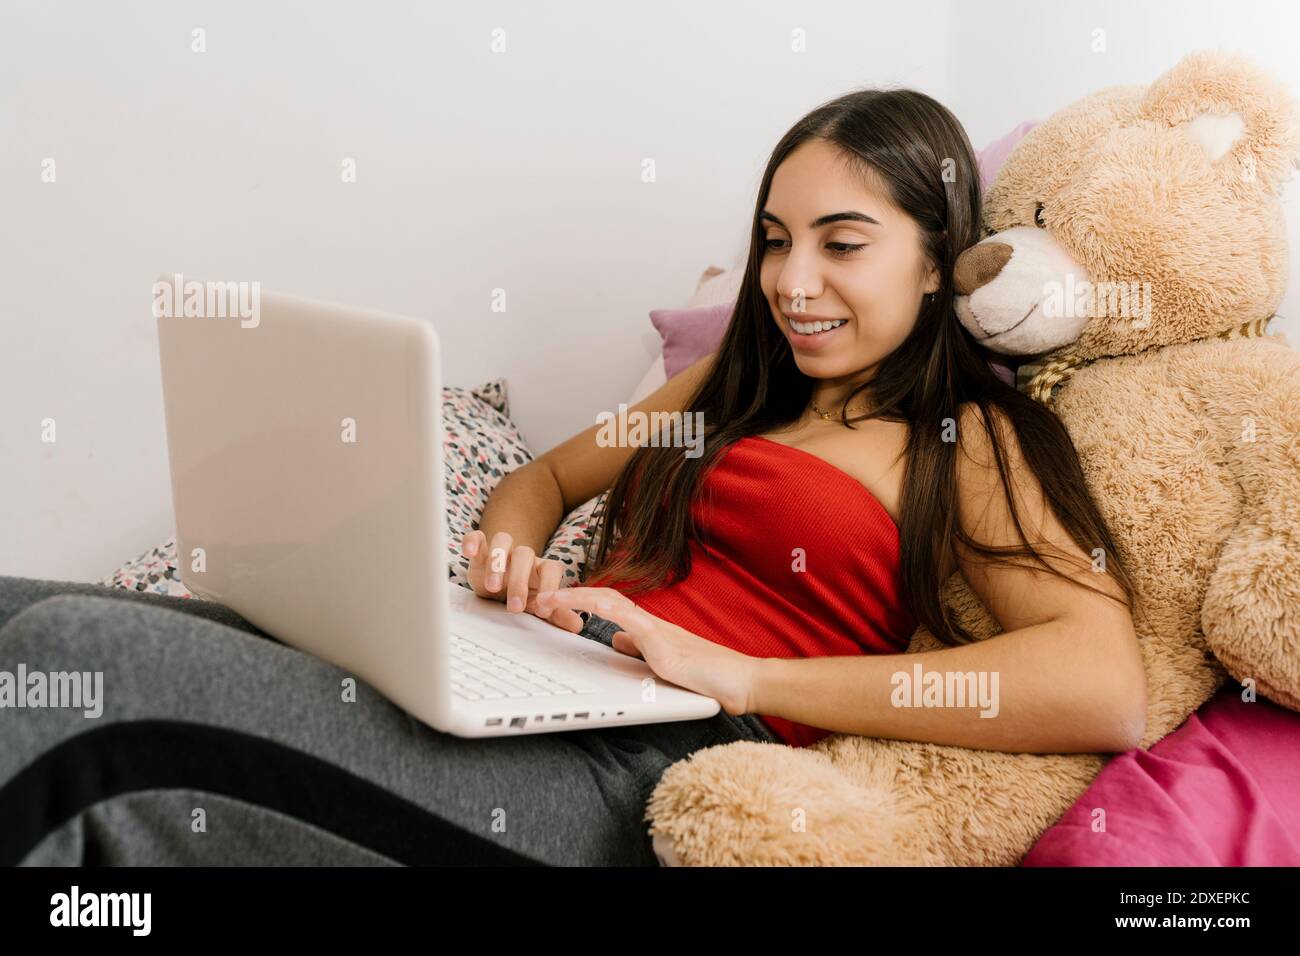 Adolescente souriante utilisant un ordinateur portable tout en se penchant sur l'ours en peluche jouet à la maison Banque D'Images